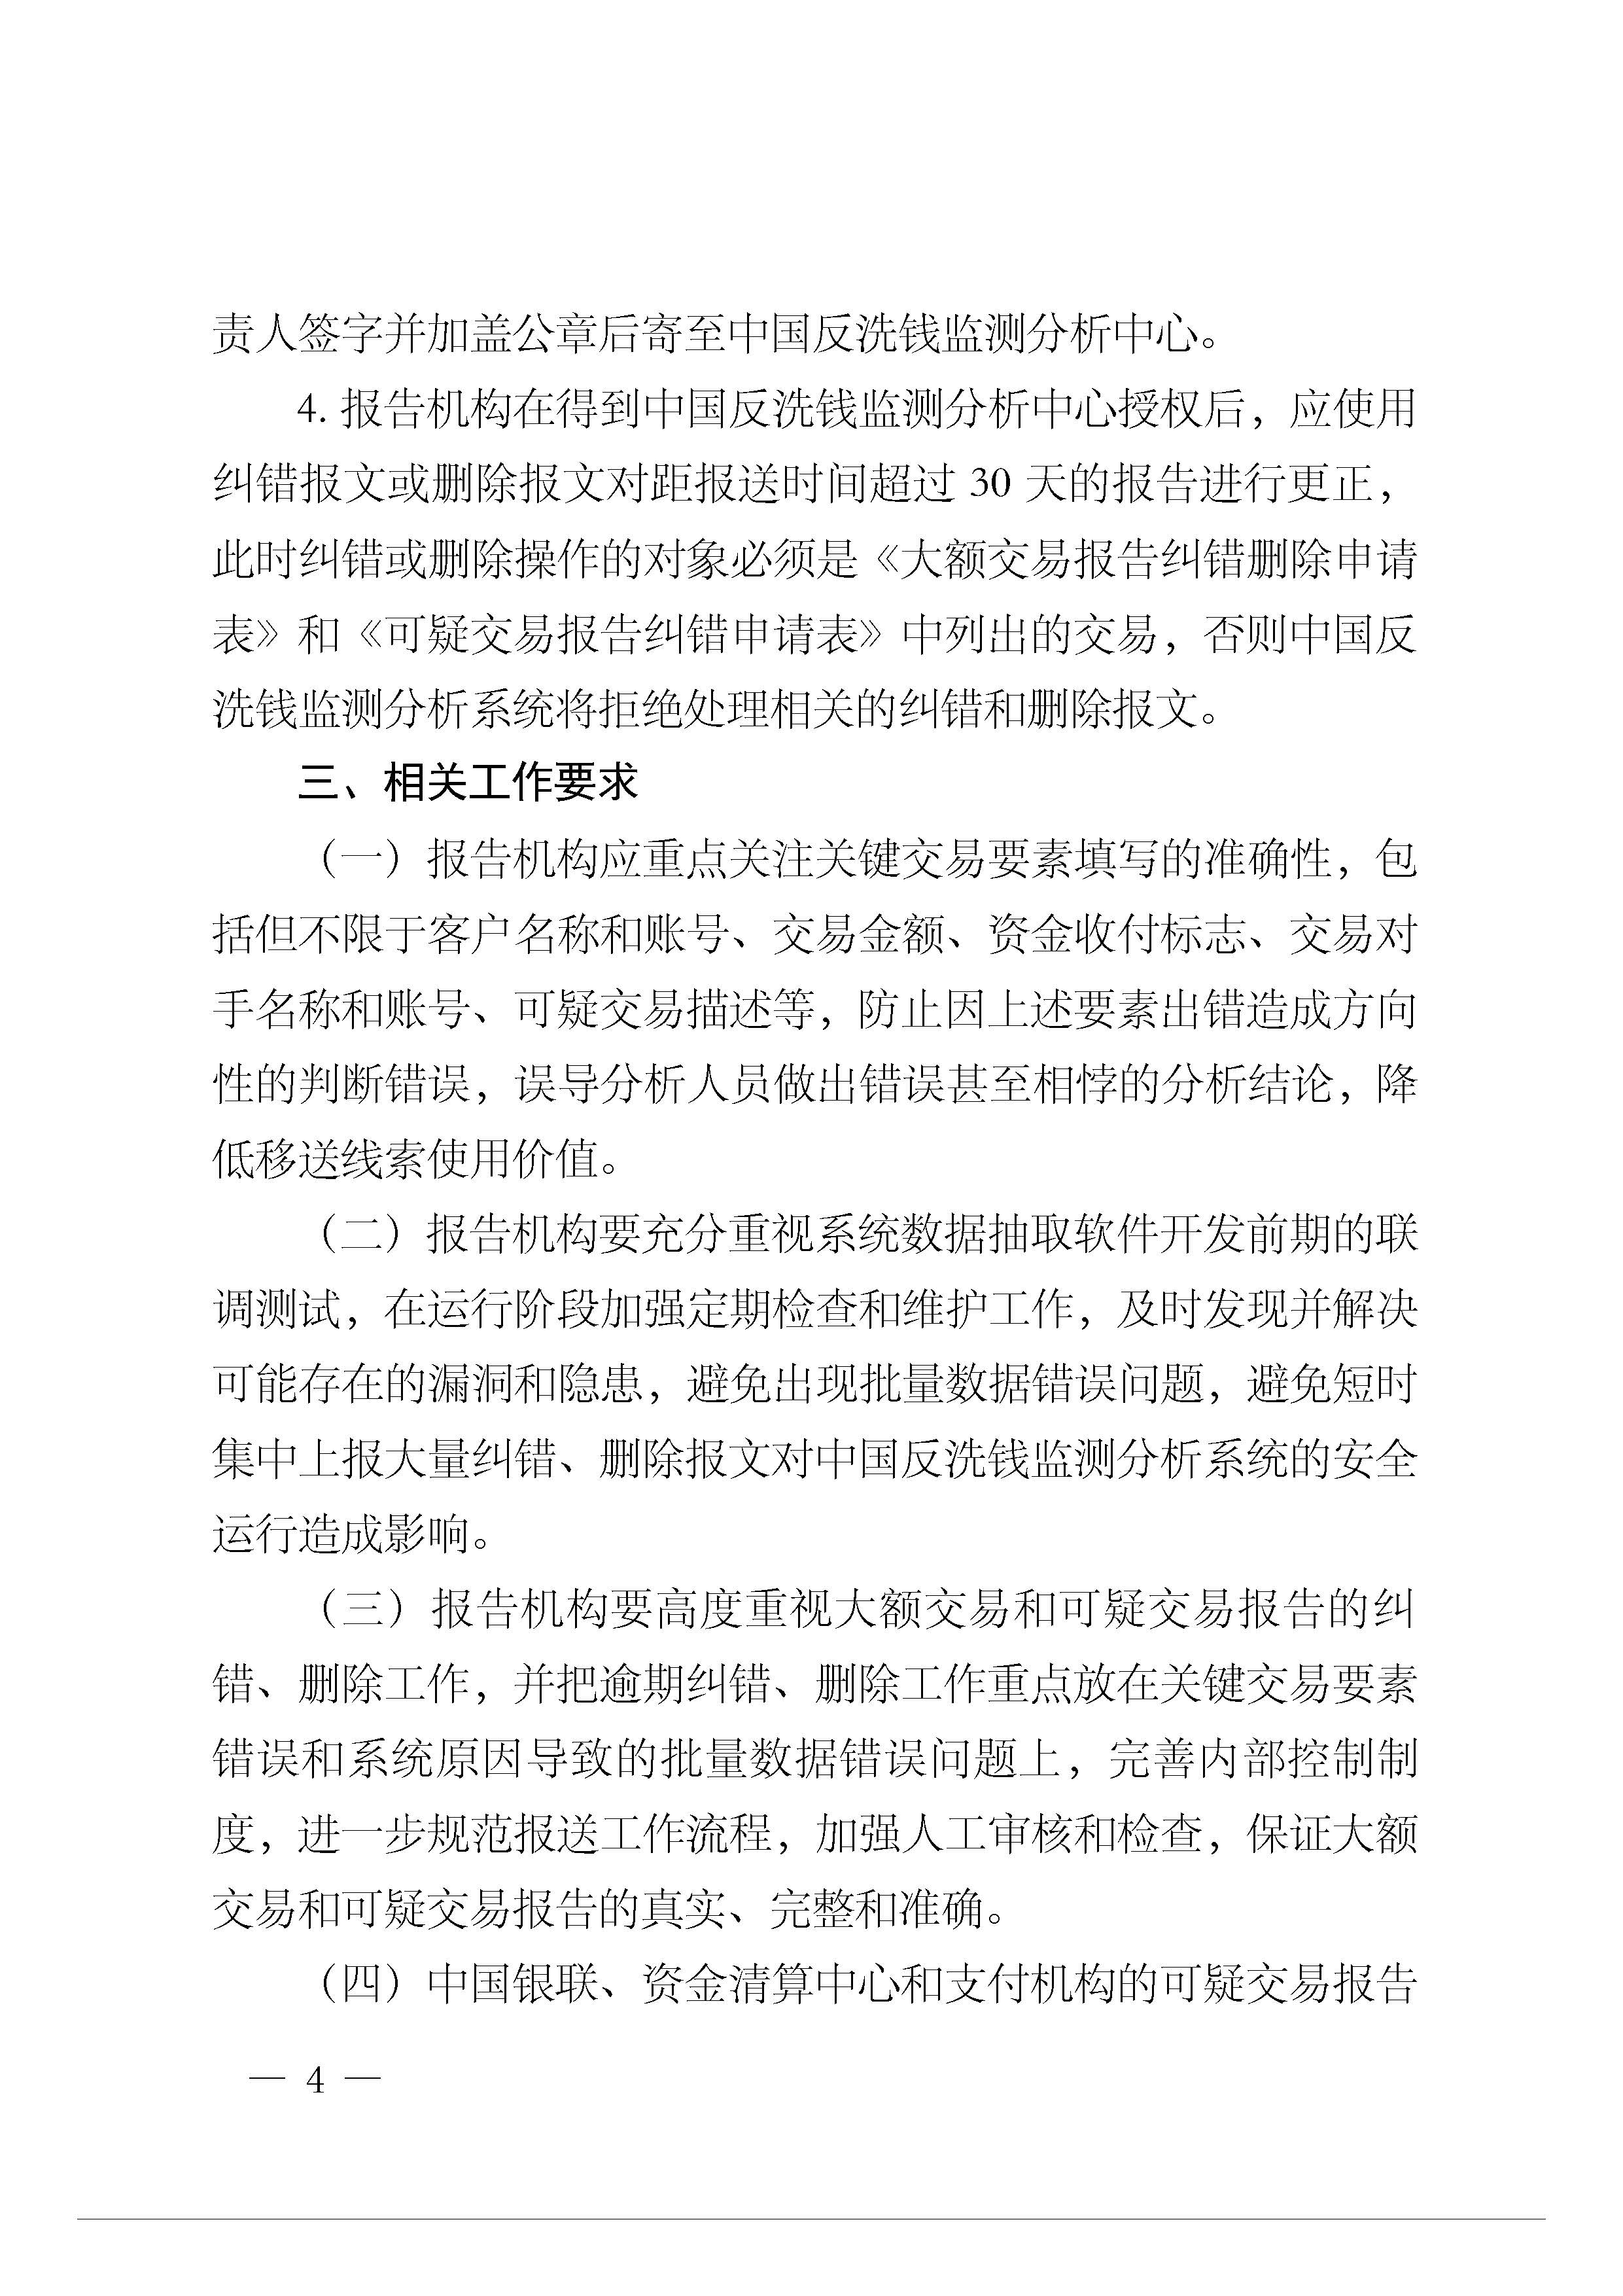 银办发[2014]104号-中国人民银行办公厅关于进一步规范大额交易和可疑交易报告纠错删除.jpg